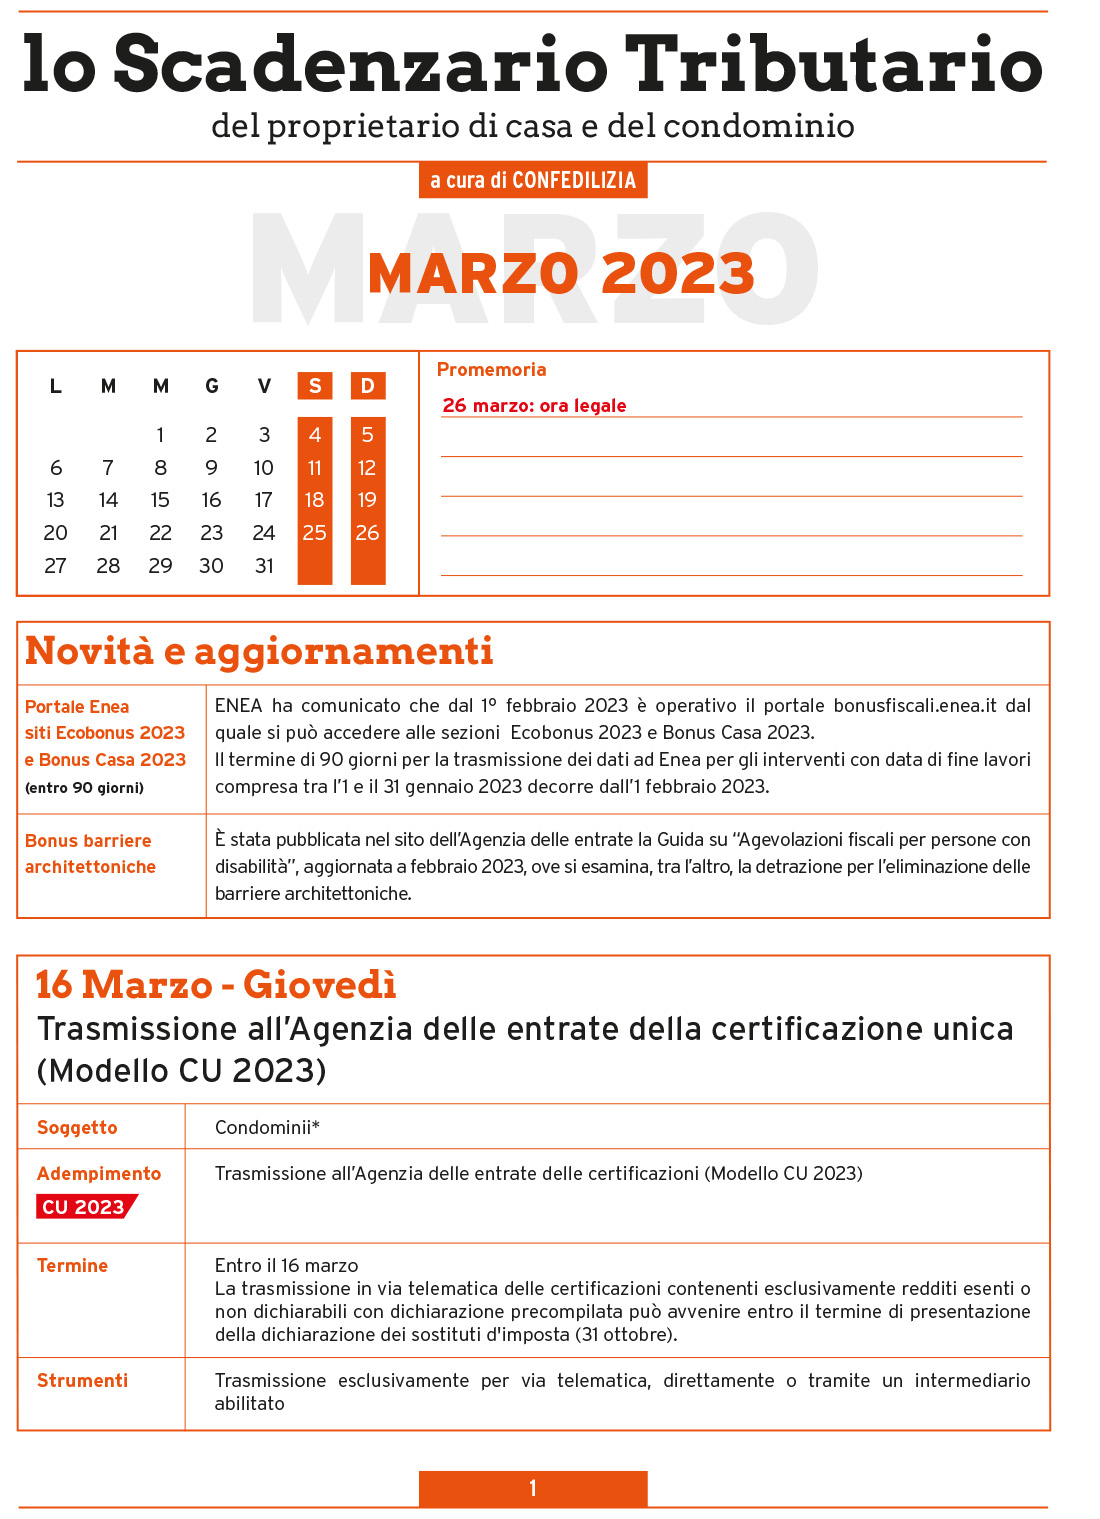 SCADENZARIO TRIBUTARIO MARZO 2023 (9 pagg.)-1